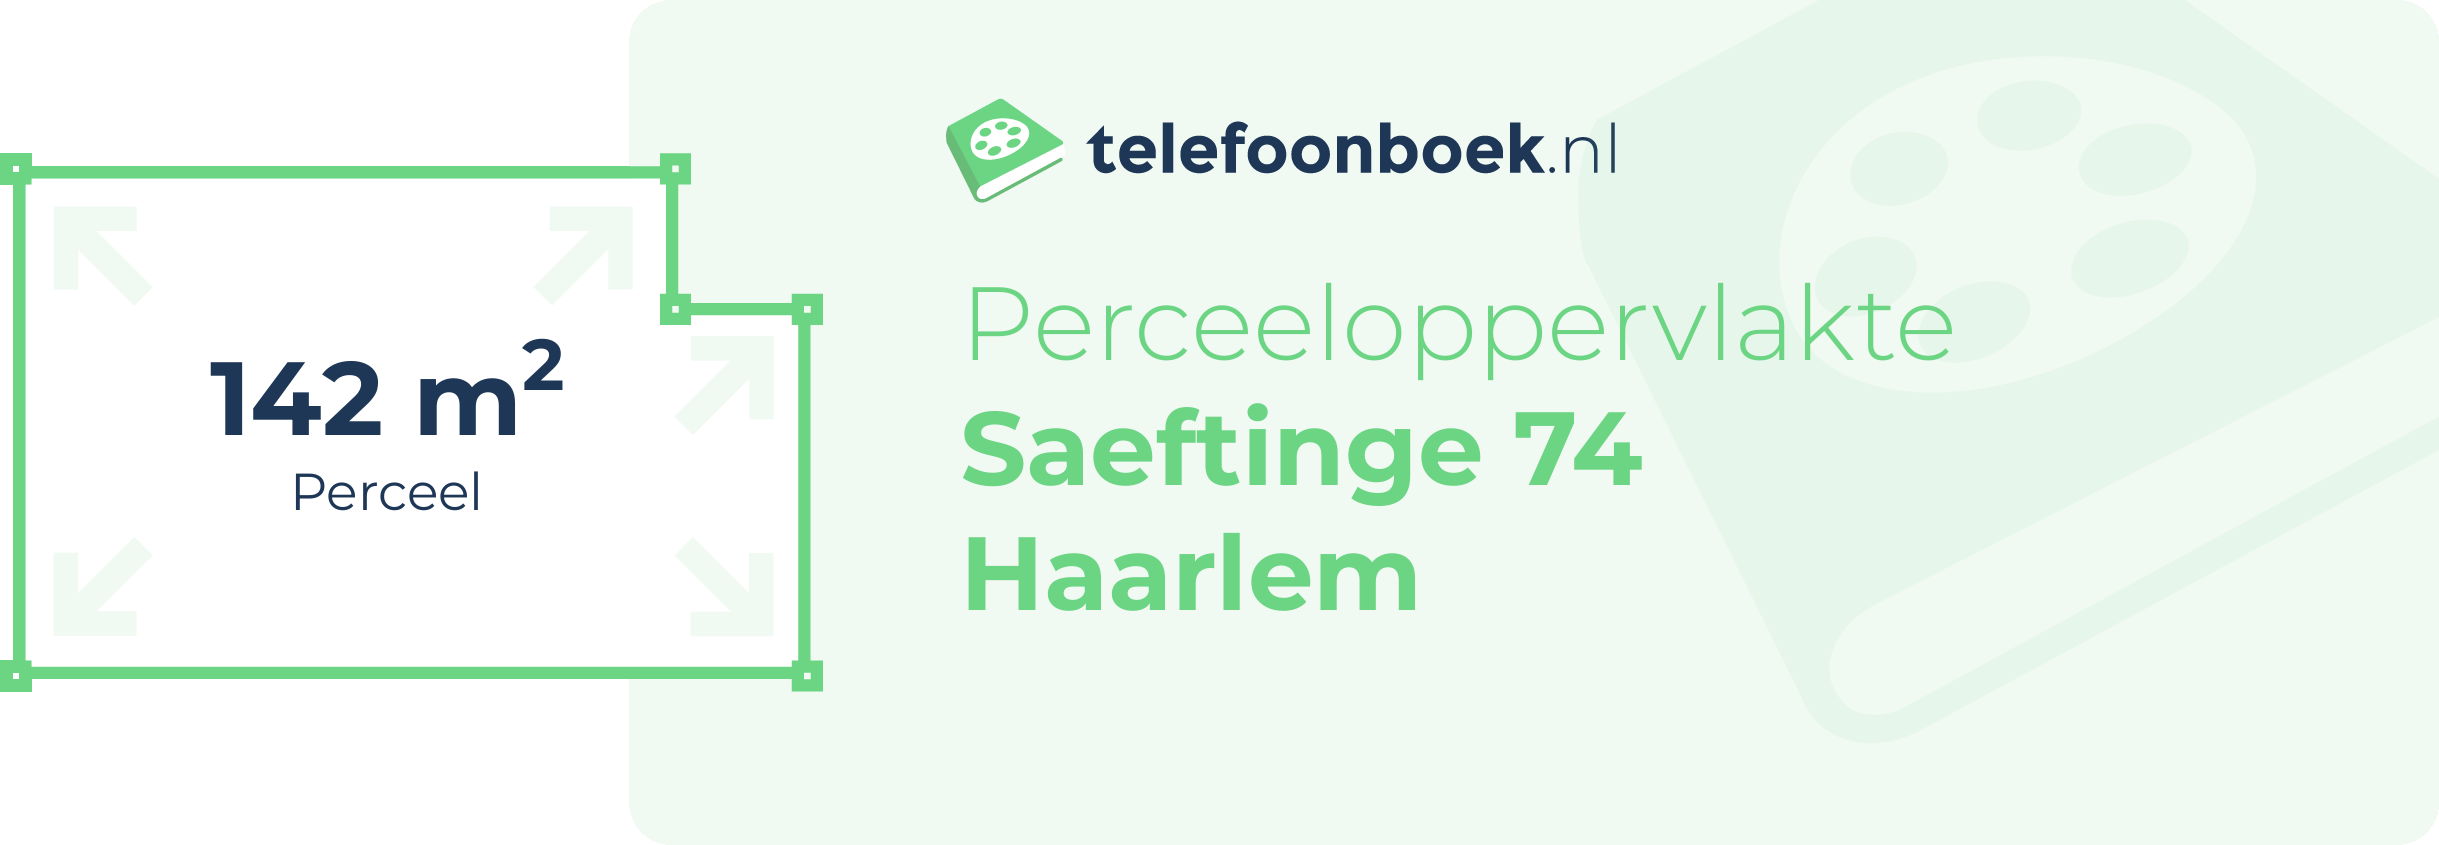 Perceeloppervlakte Saeftinge 74 Haarlem